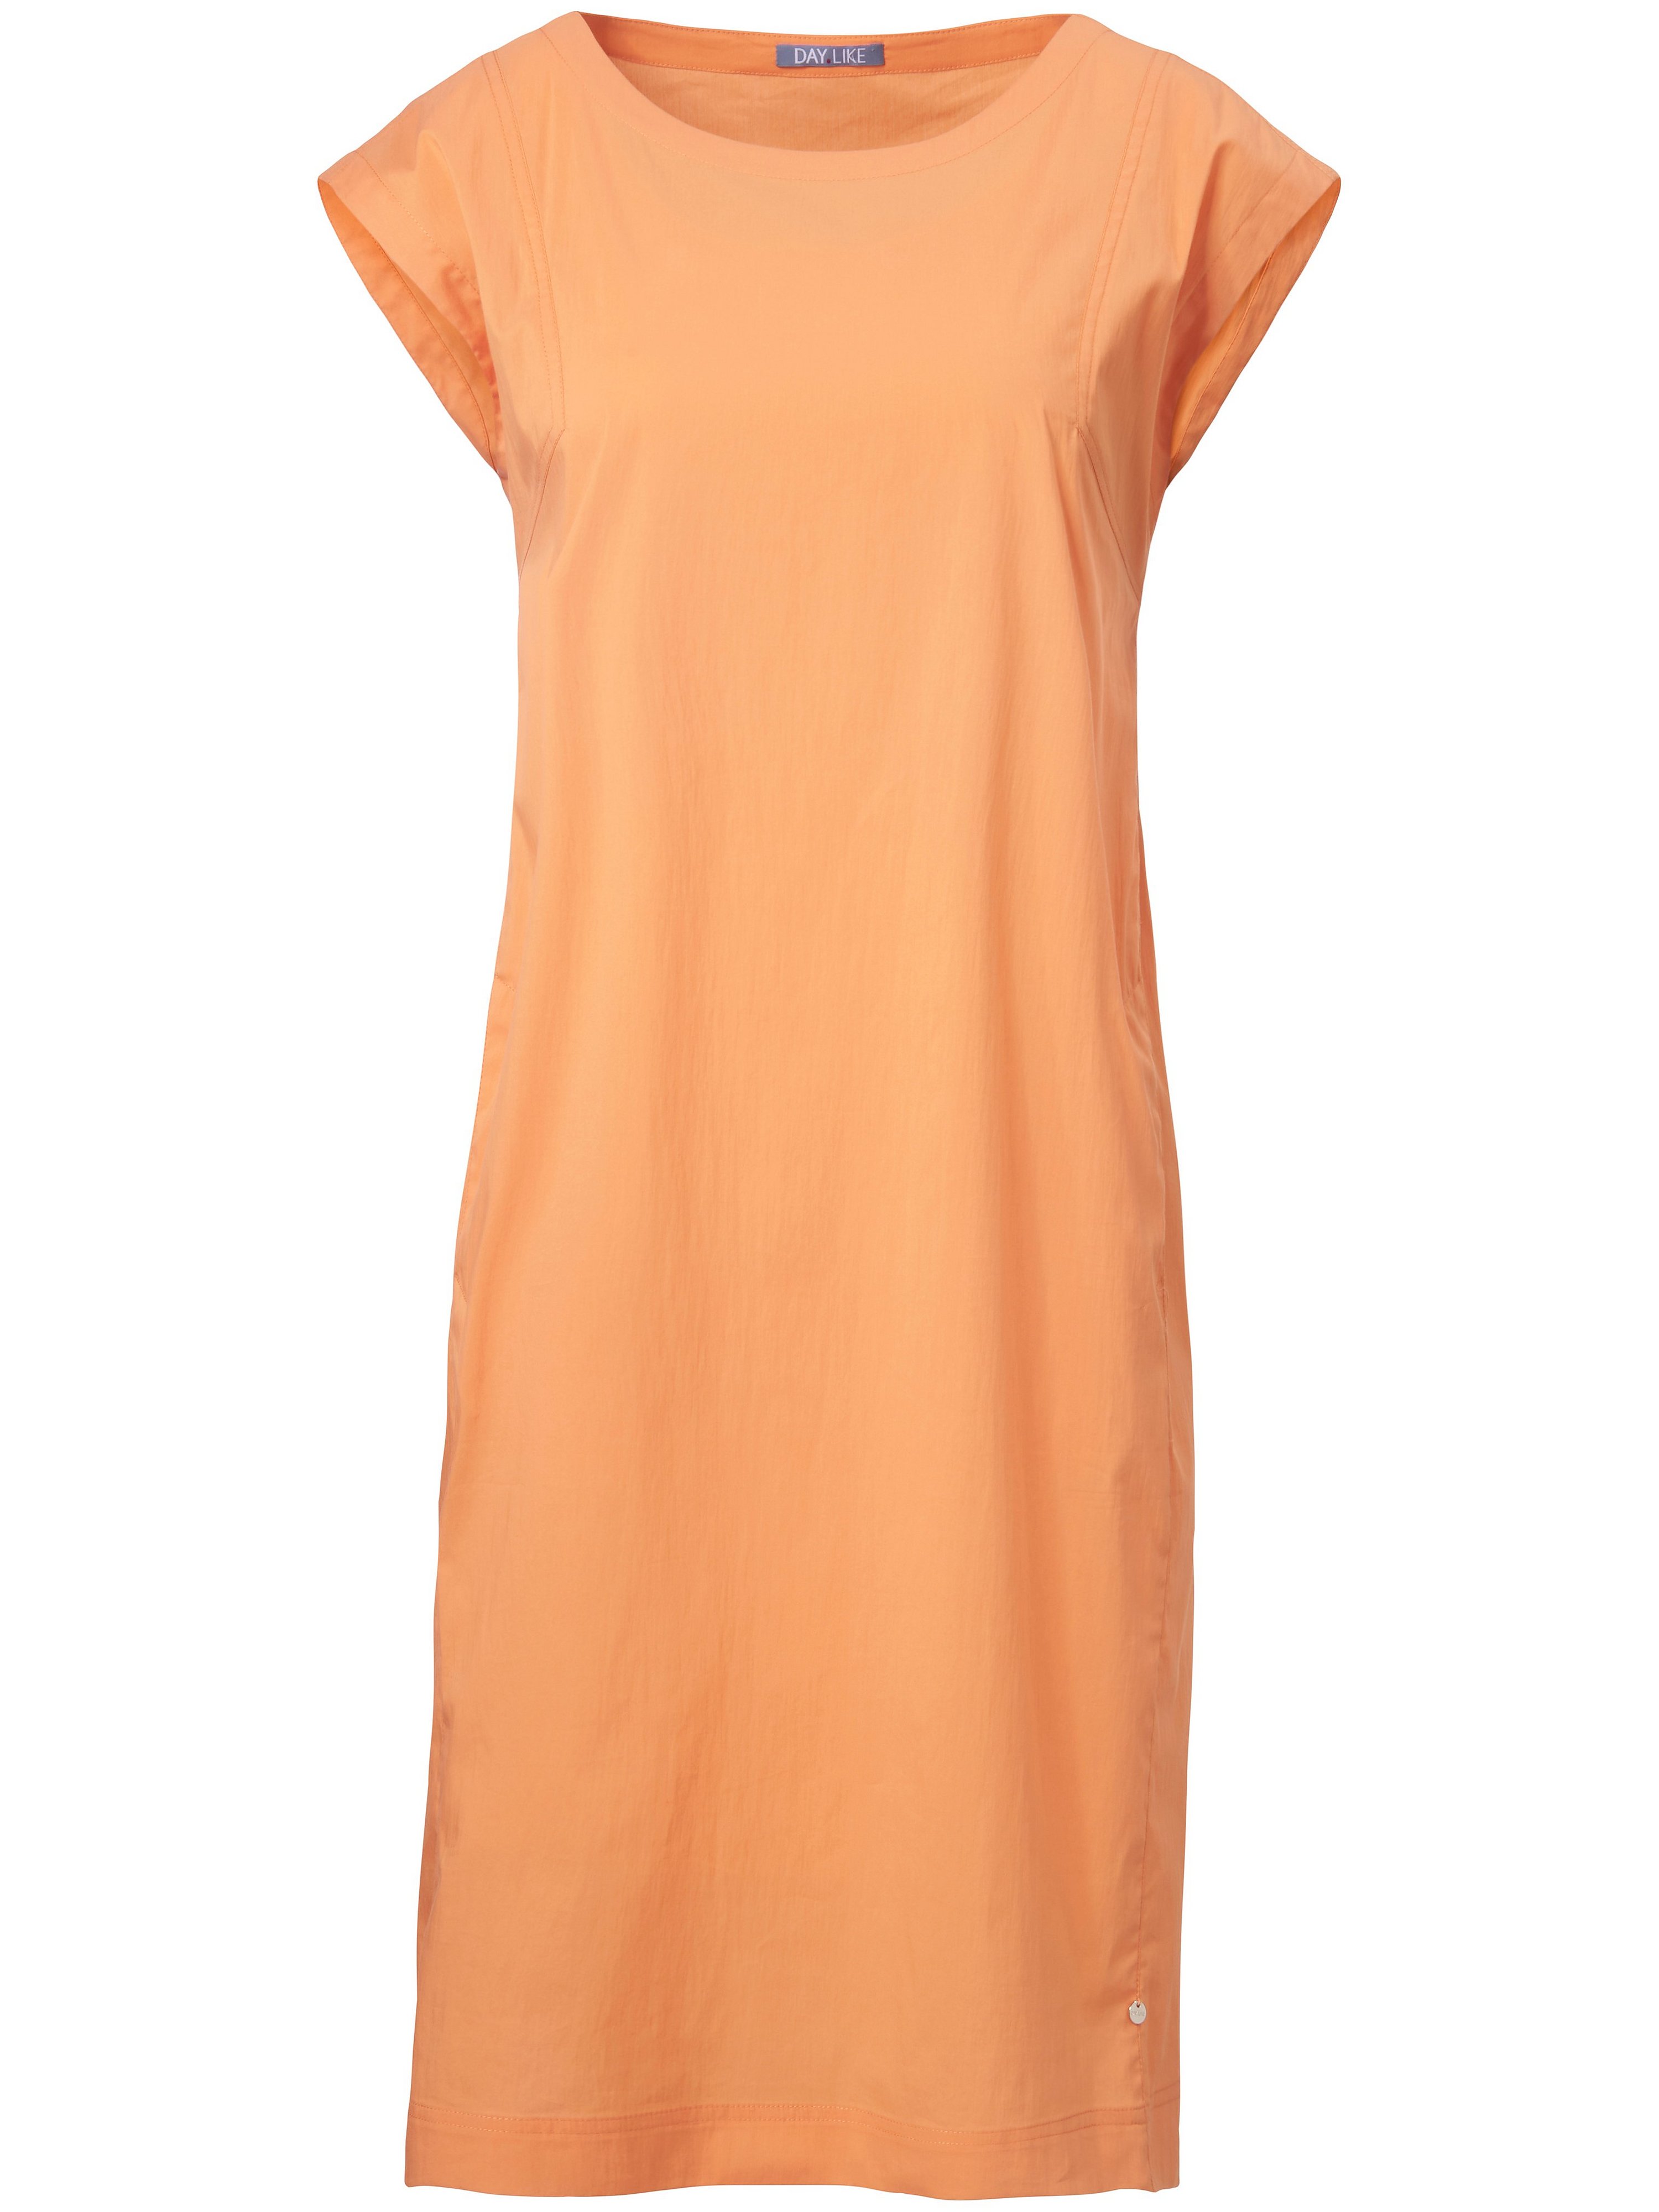 Mouwloze jurk naadzakken Van DAY.LIKE oranje